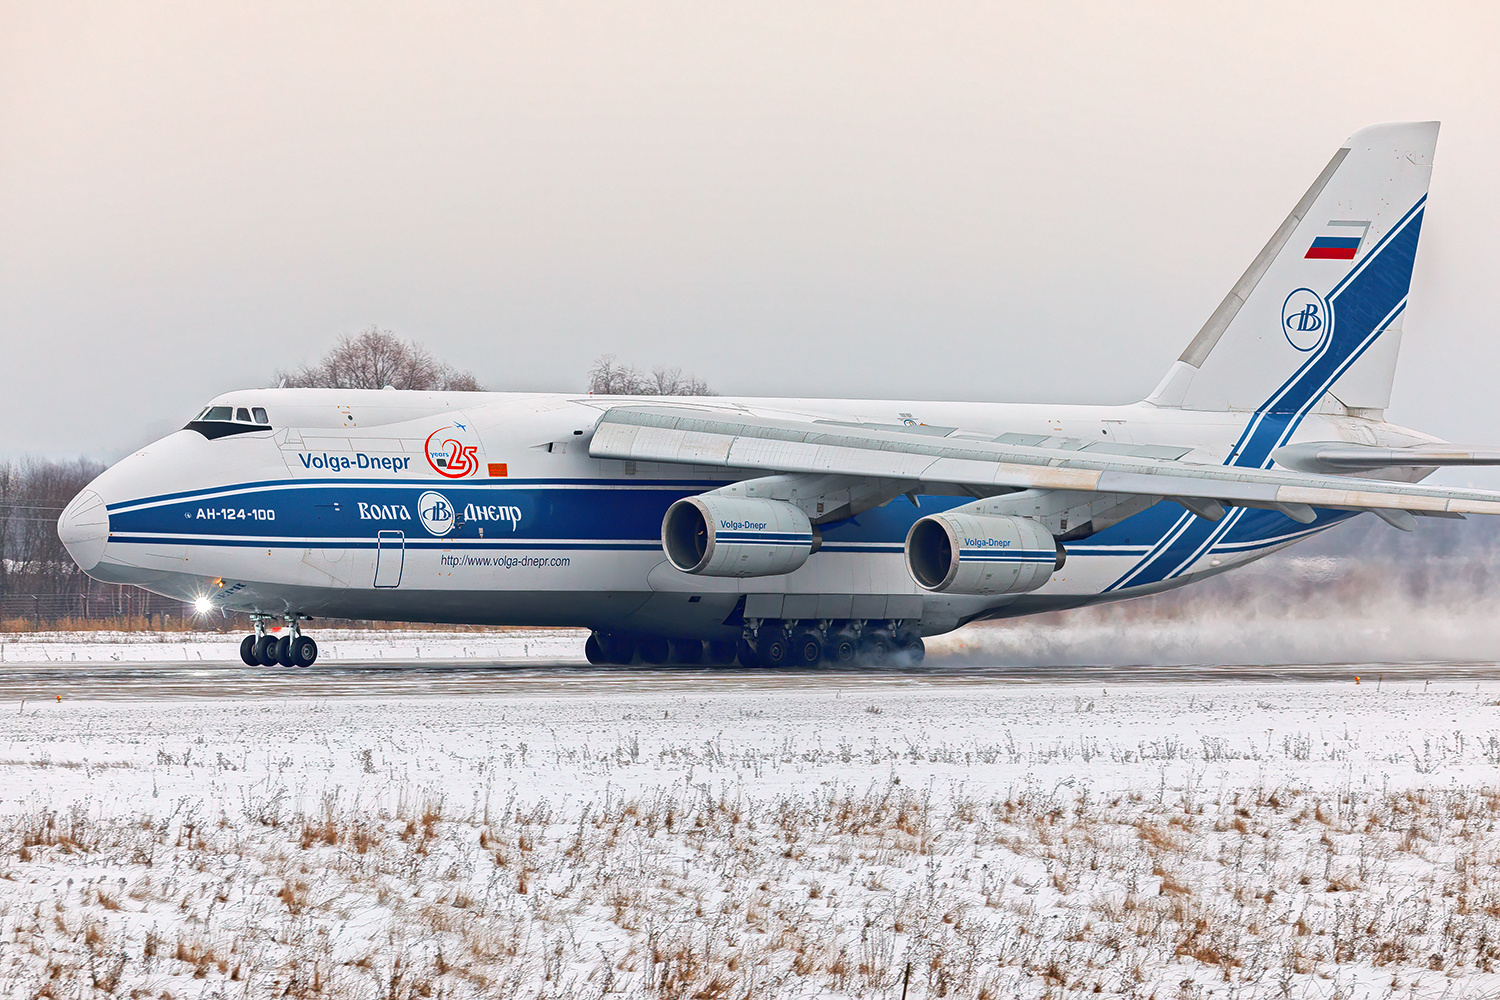 Ан-124 Руслан руслан ан124 волга-днепр an124